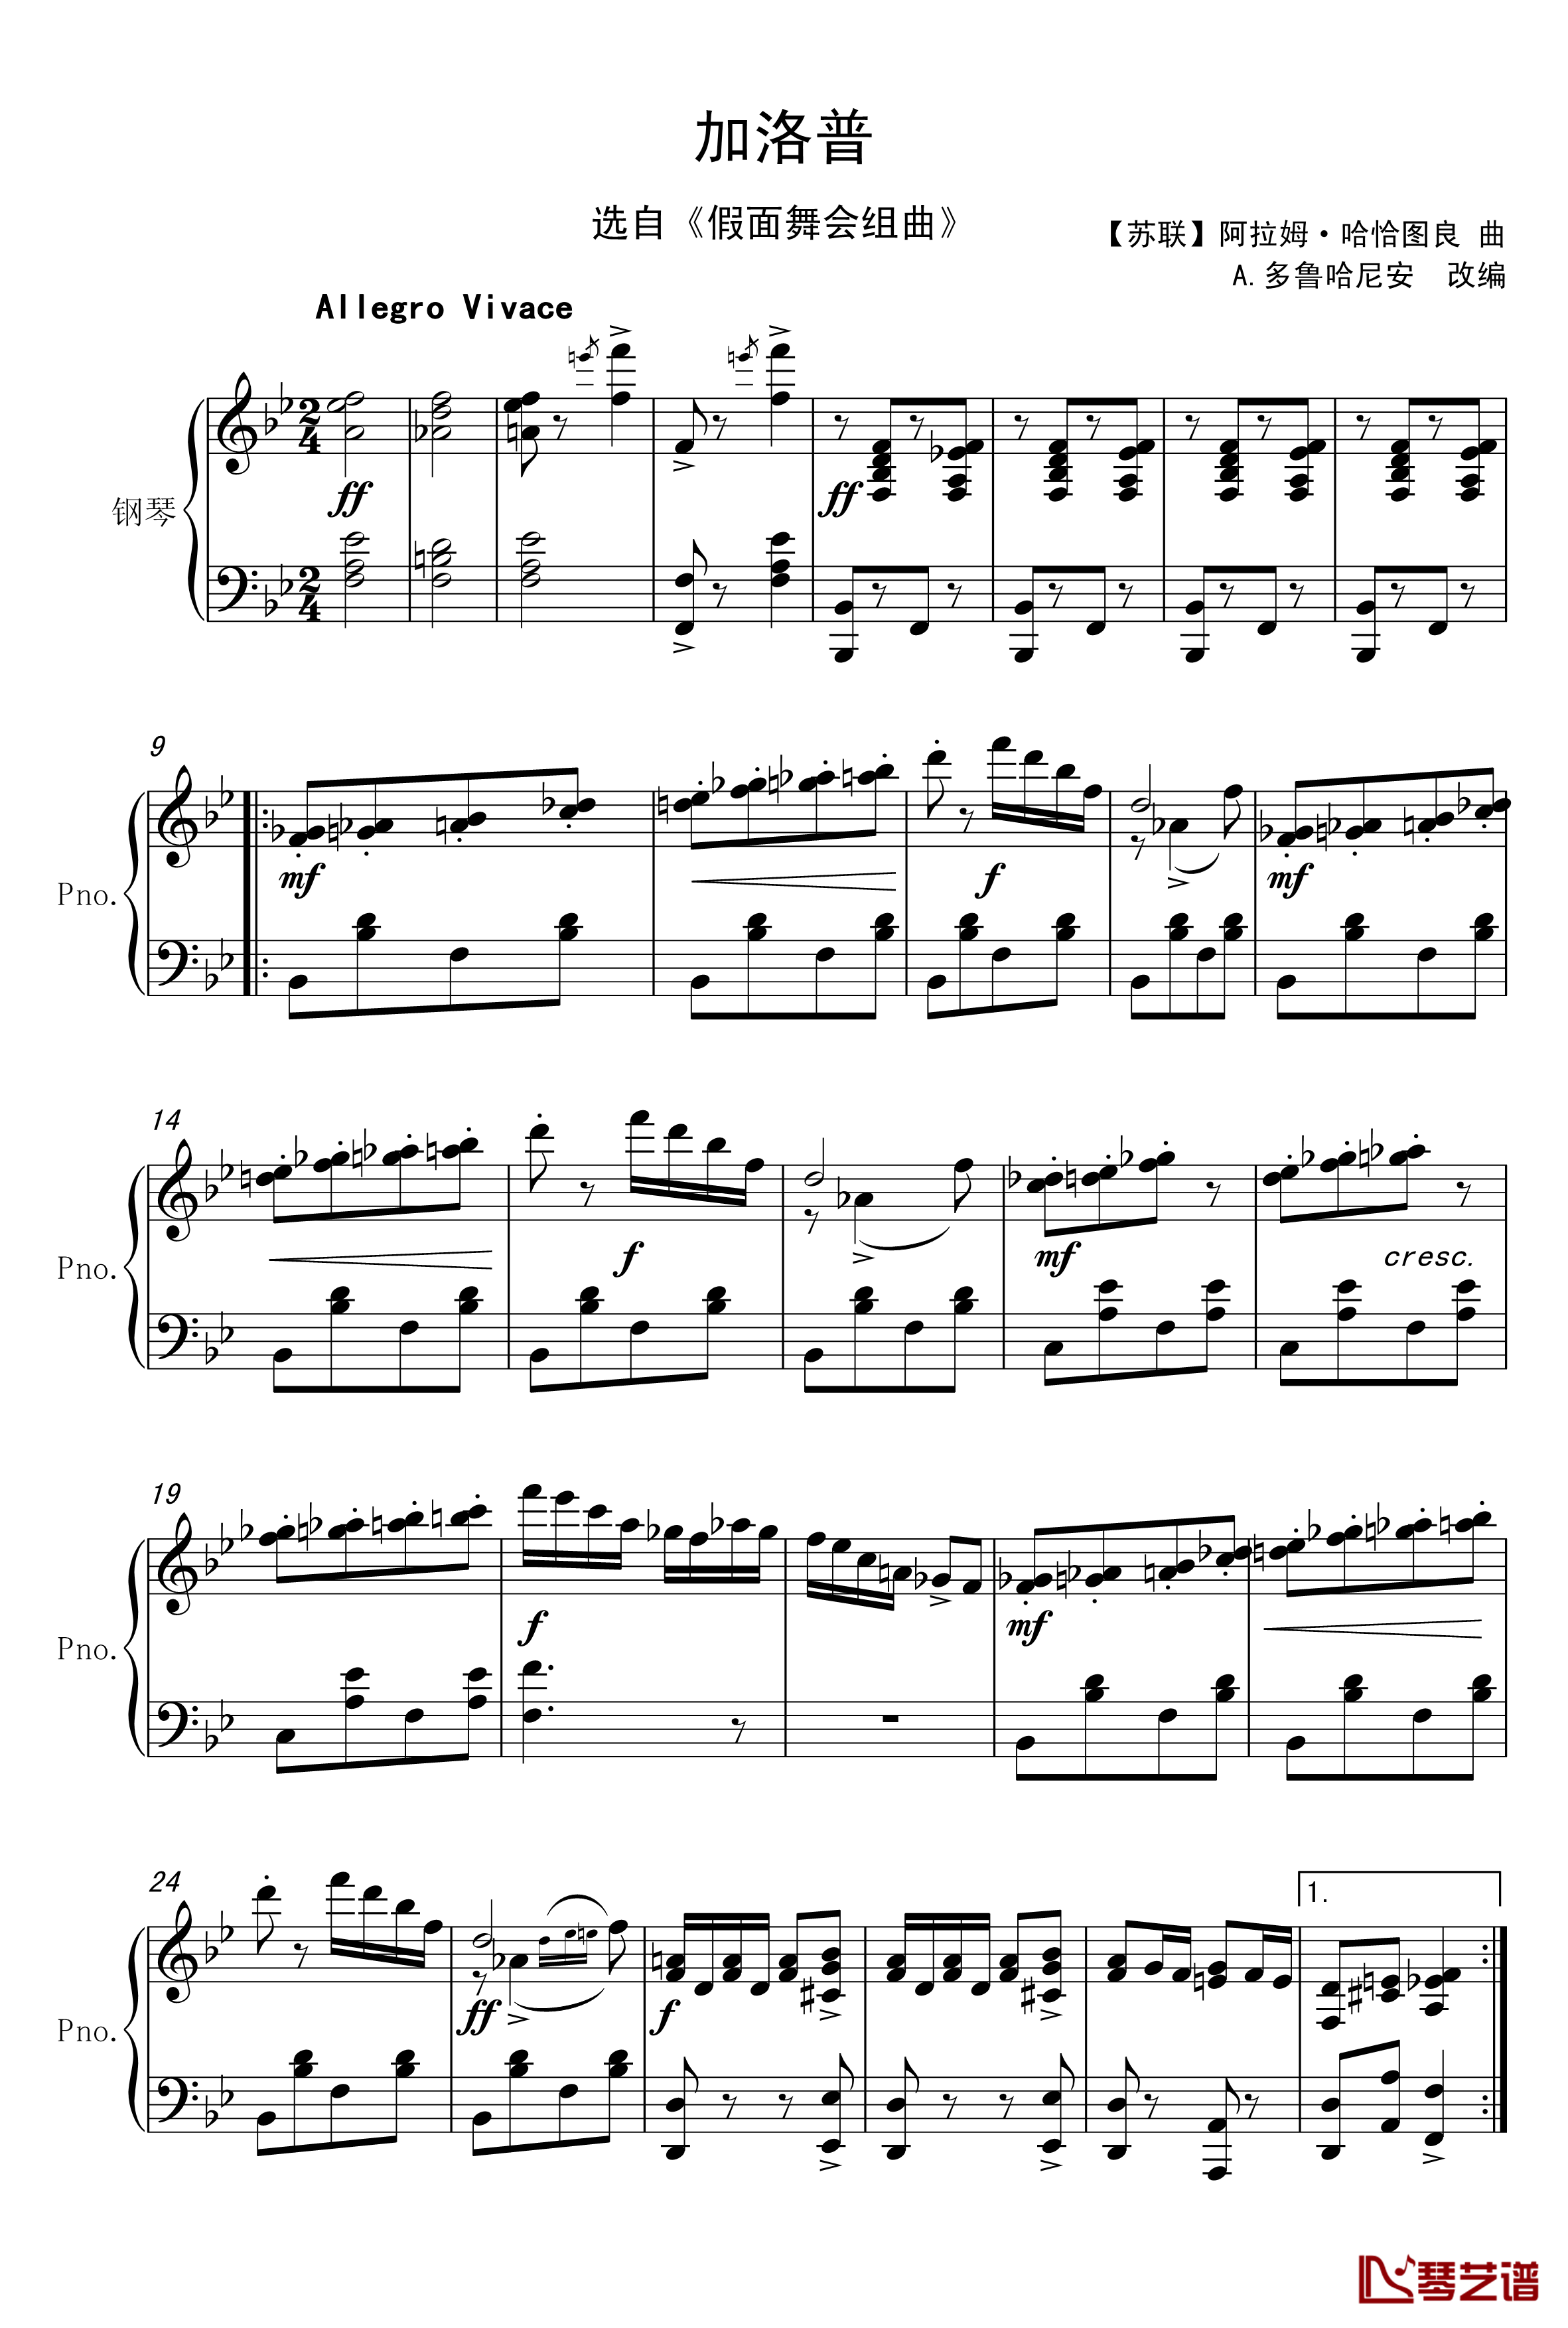 加洛普钢琴谱-哈恰图良